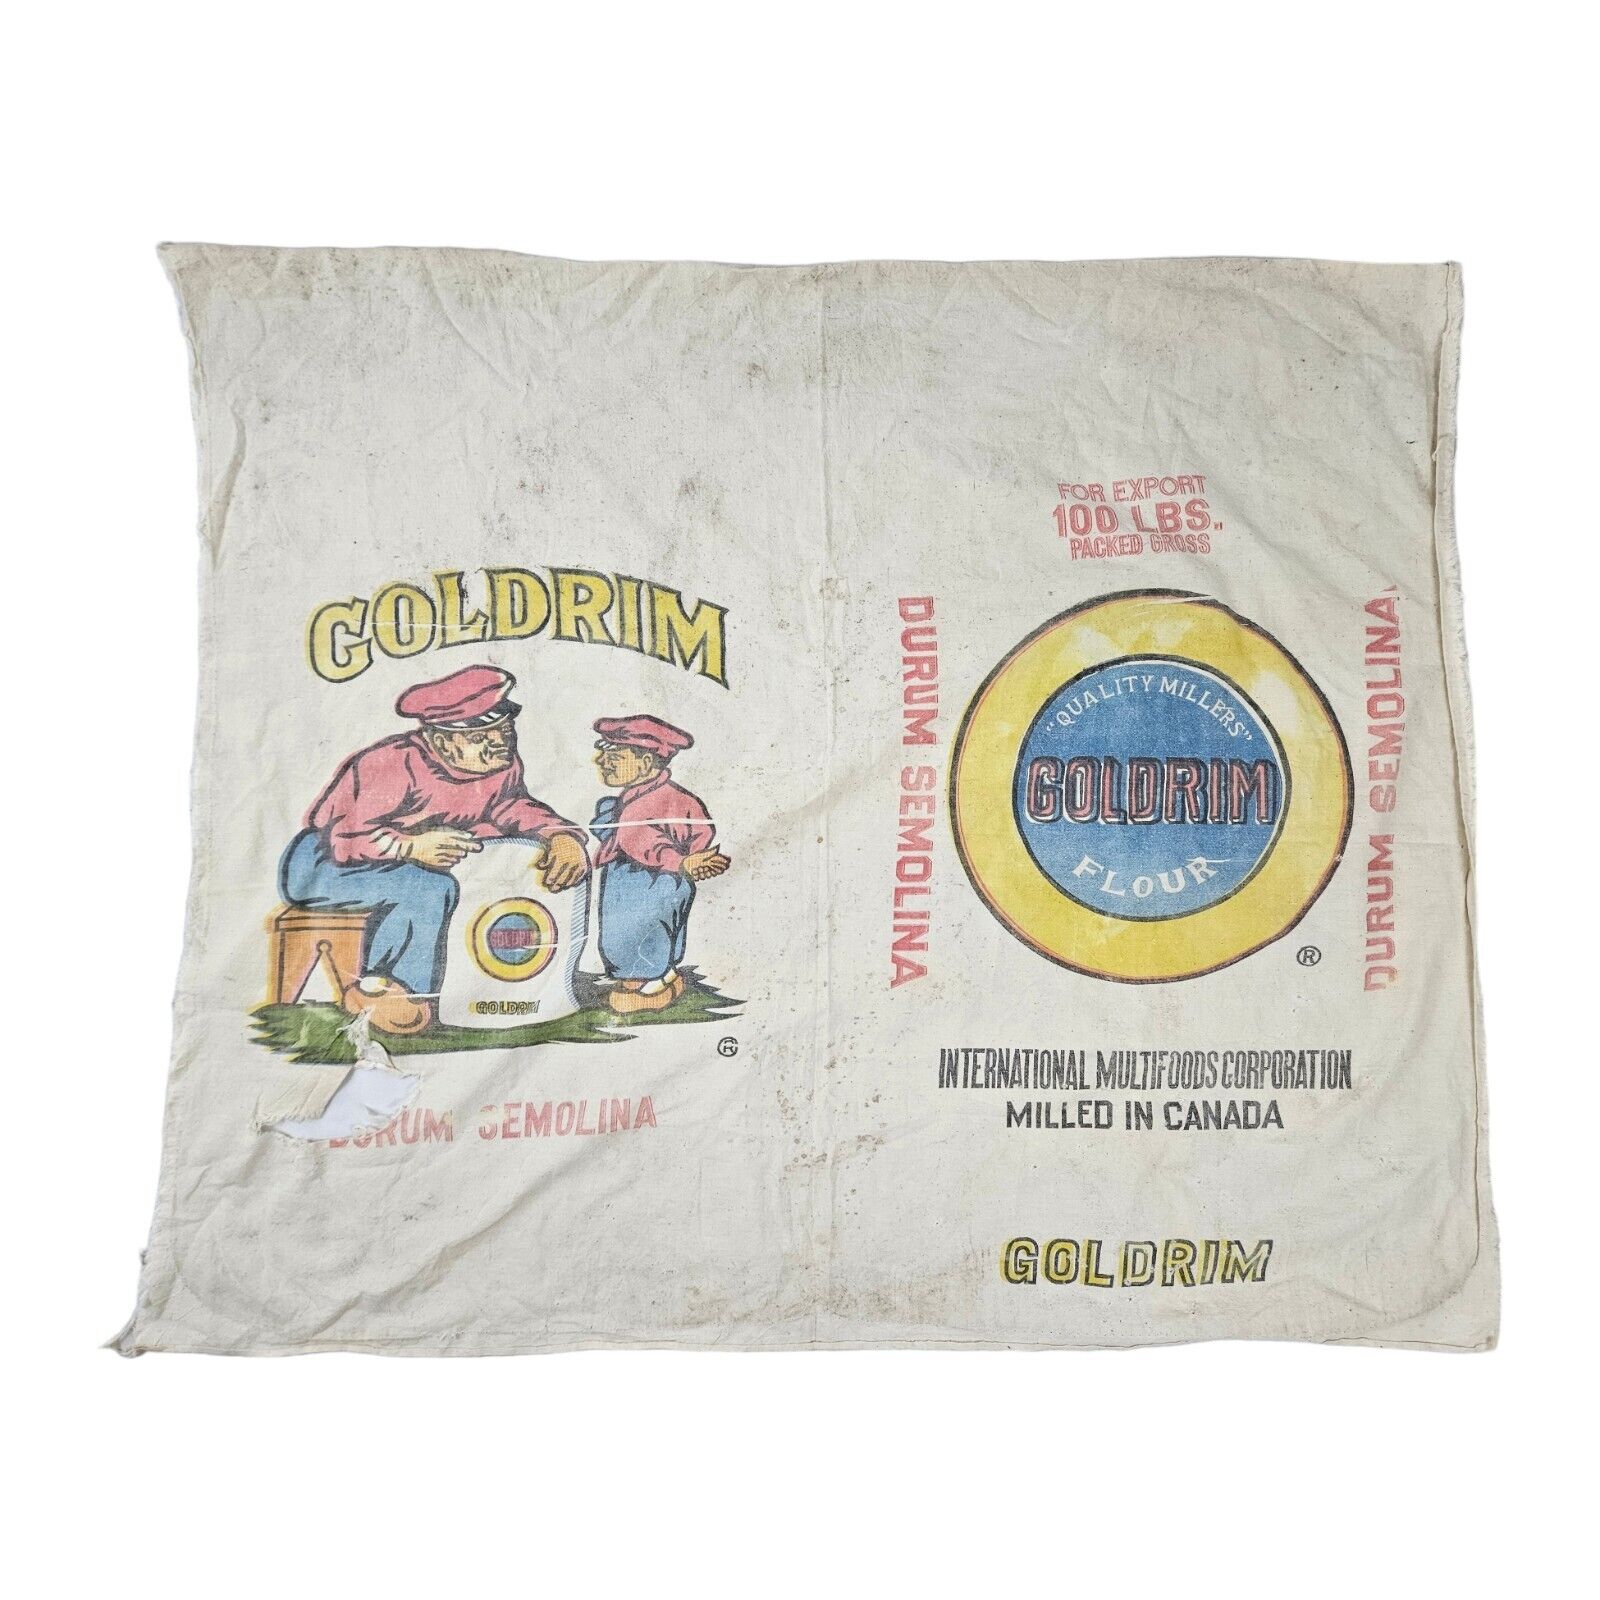 Vintage Goldrim Flour Cloth Sack 100lb Cotton Bag Fabric Collectible